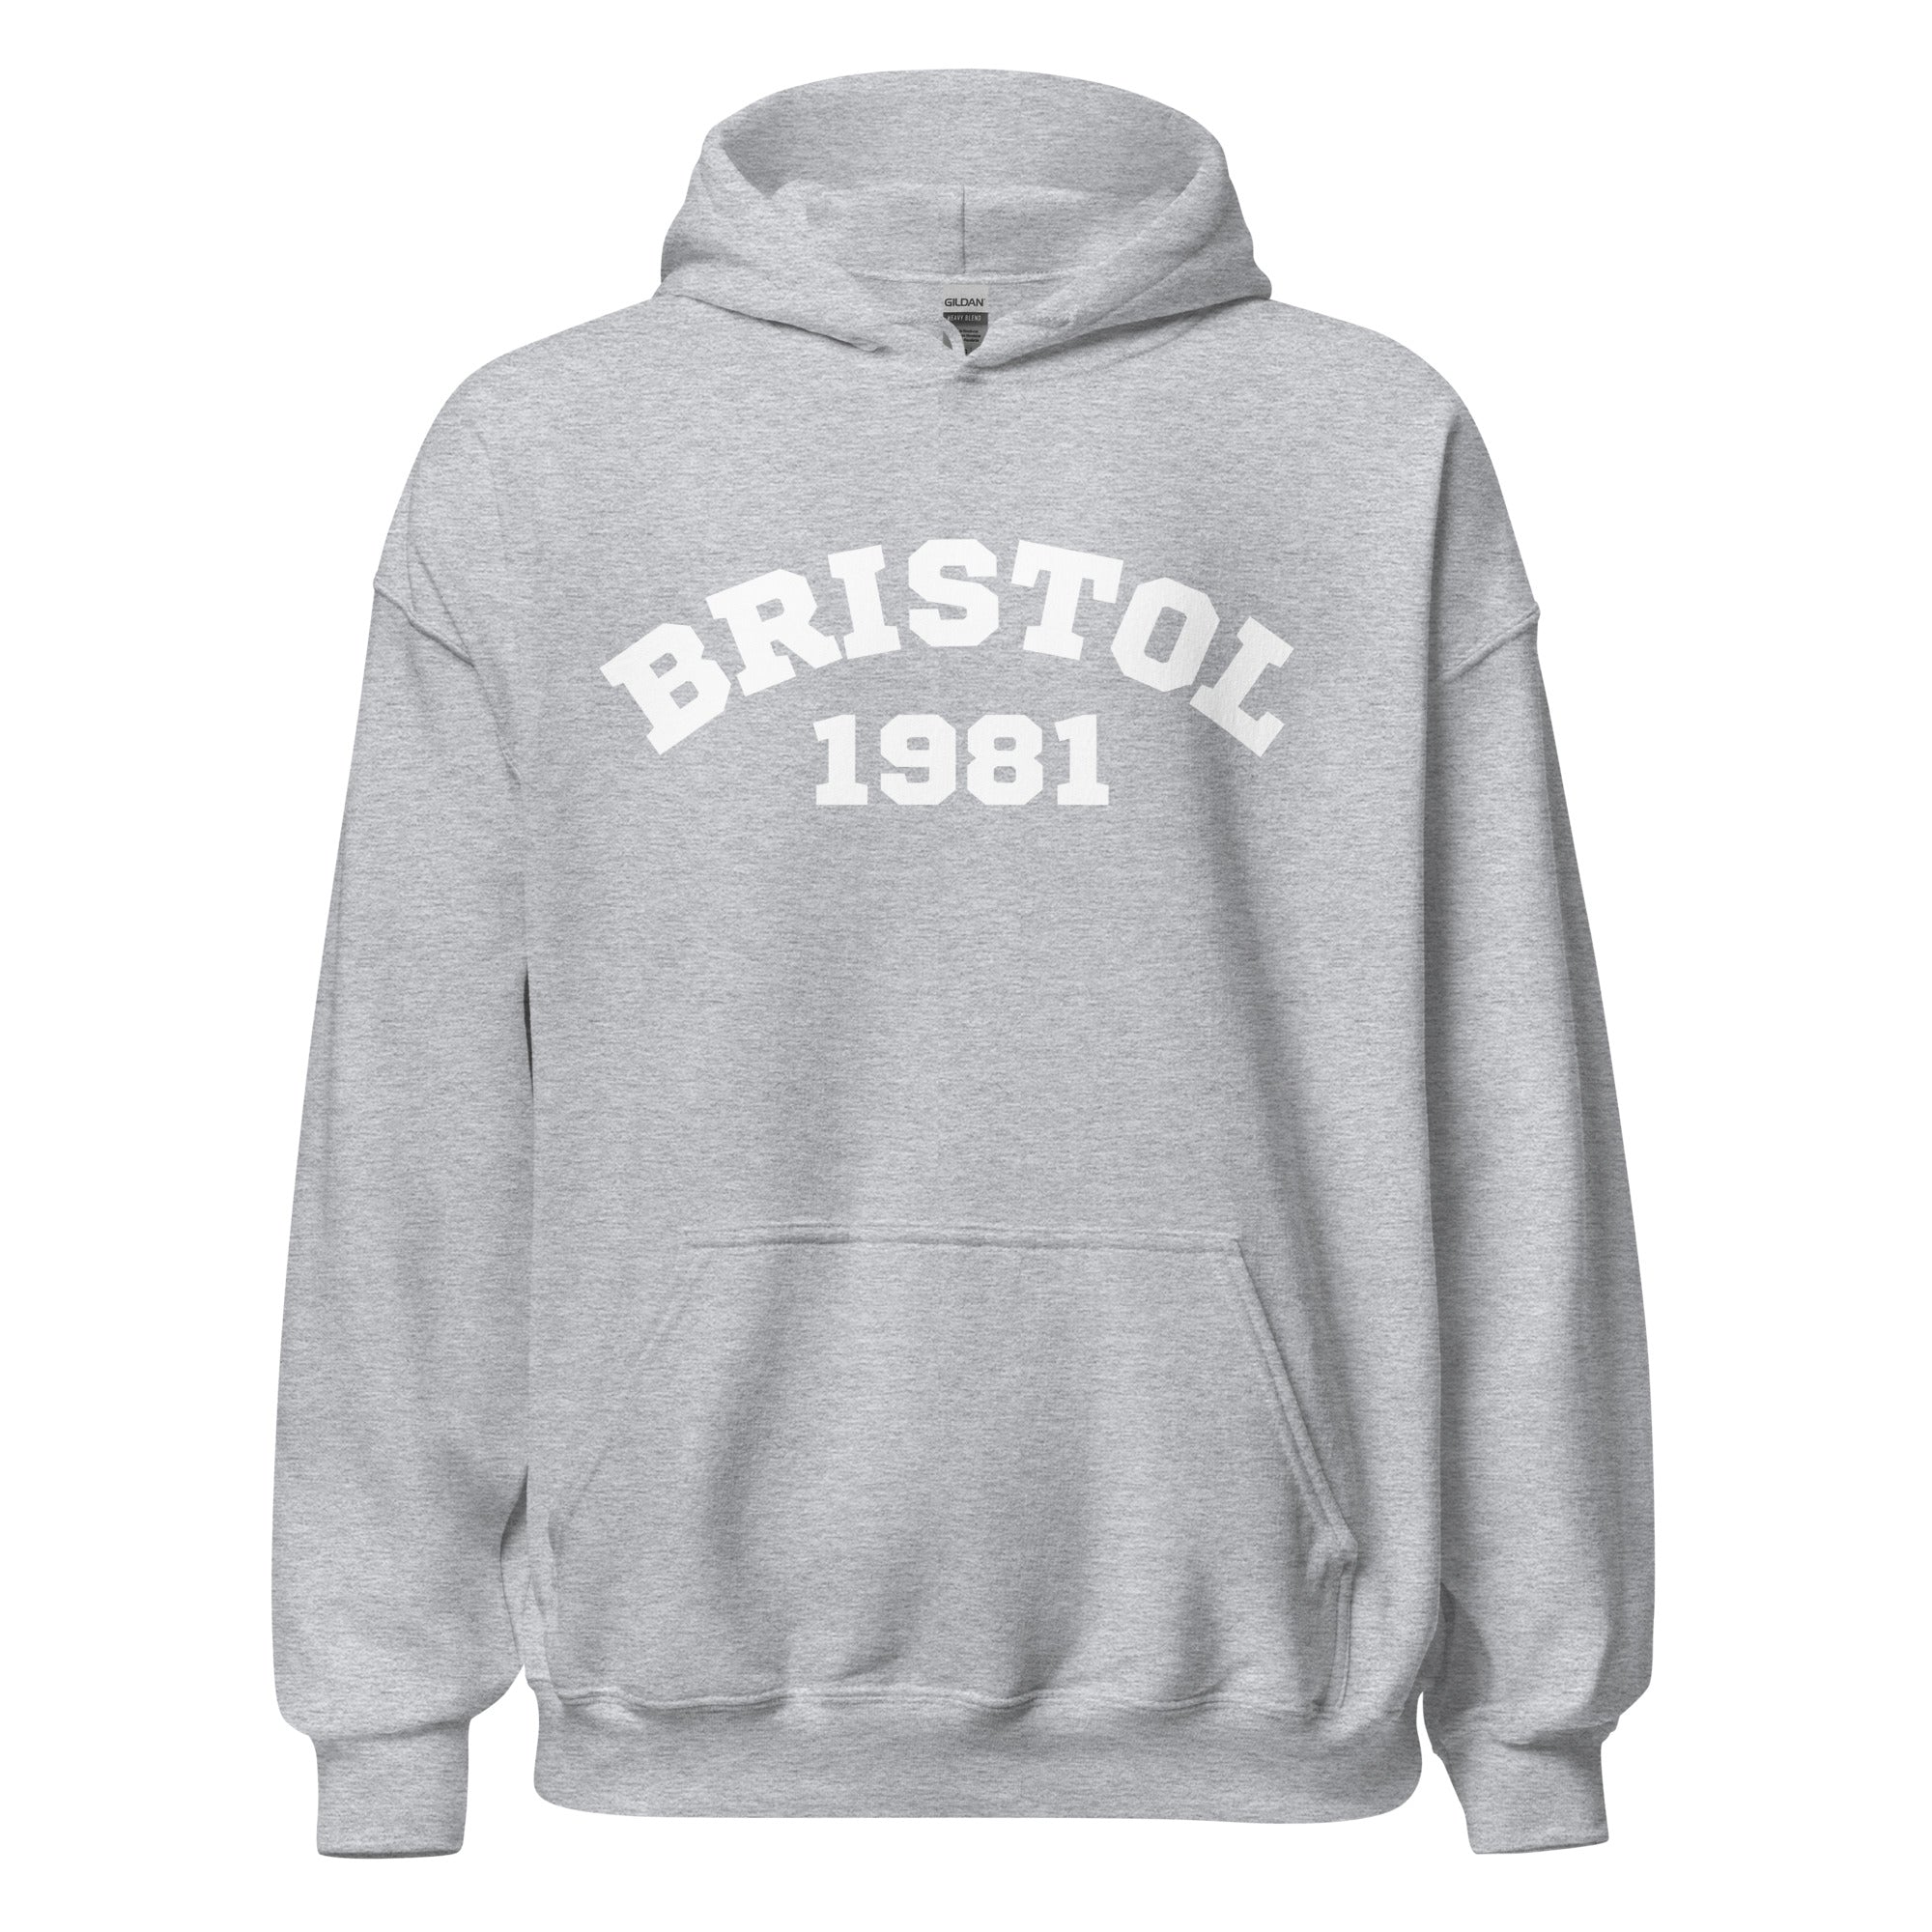 Bristol 1981 Unisex Hoodie